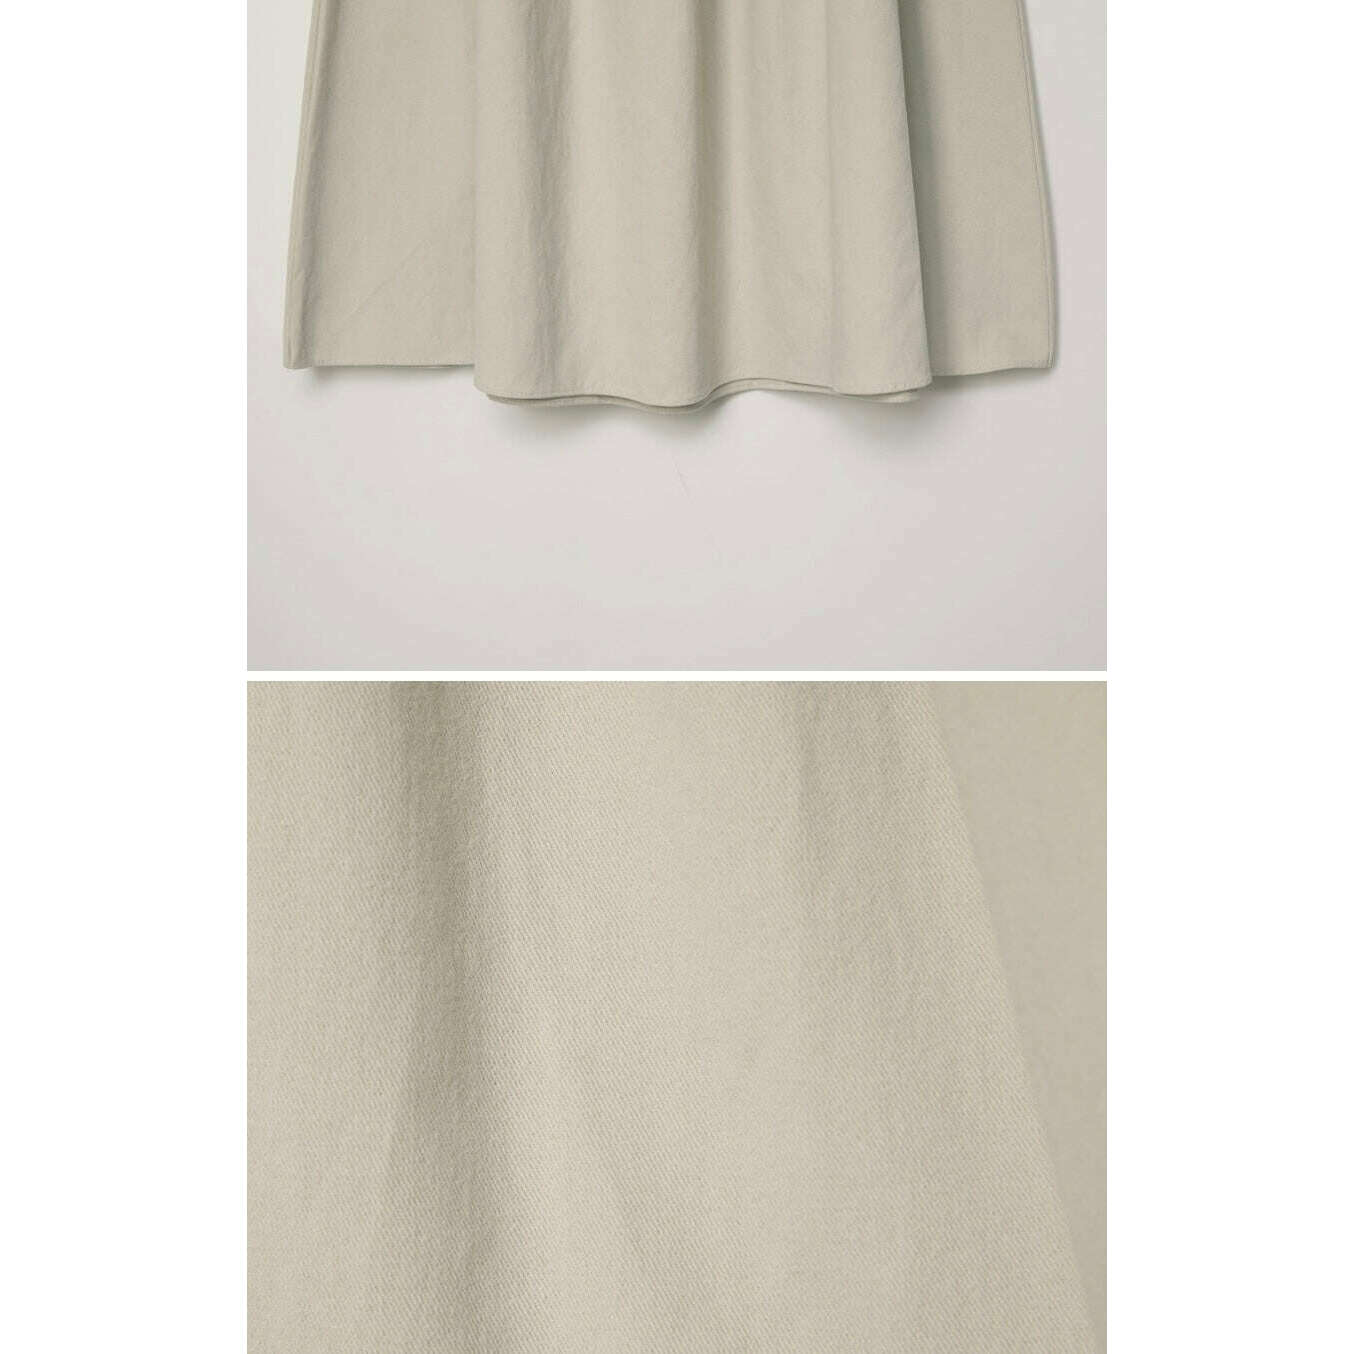 MUMMY.cc:棉質彈性粗褶邊喇叭半截裙